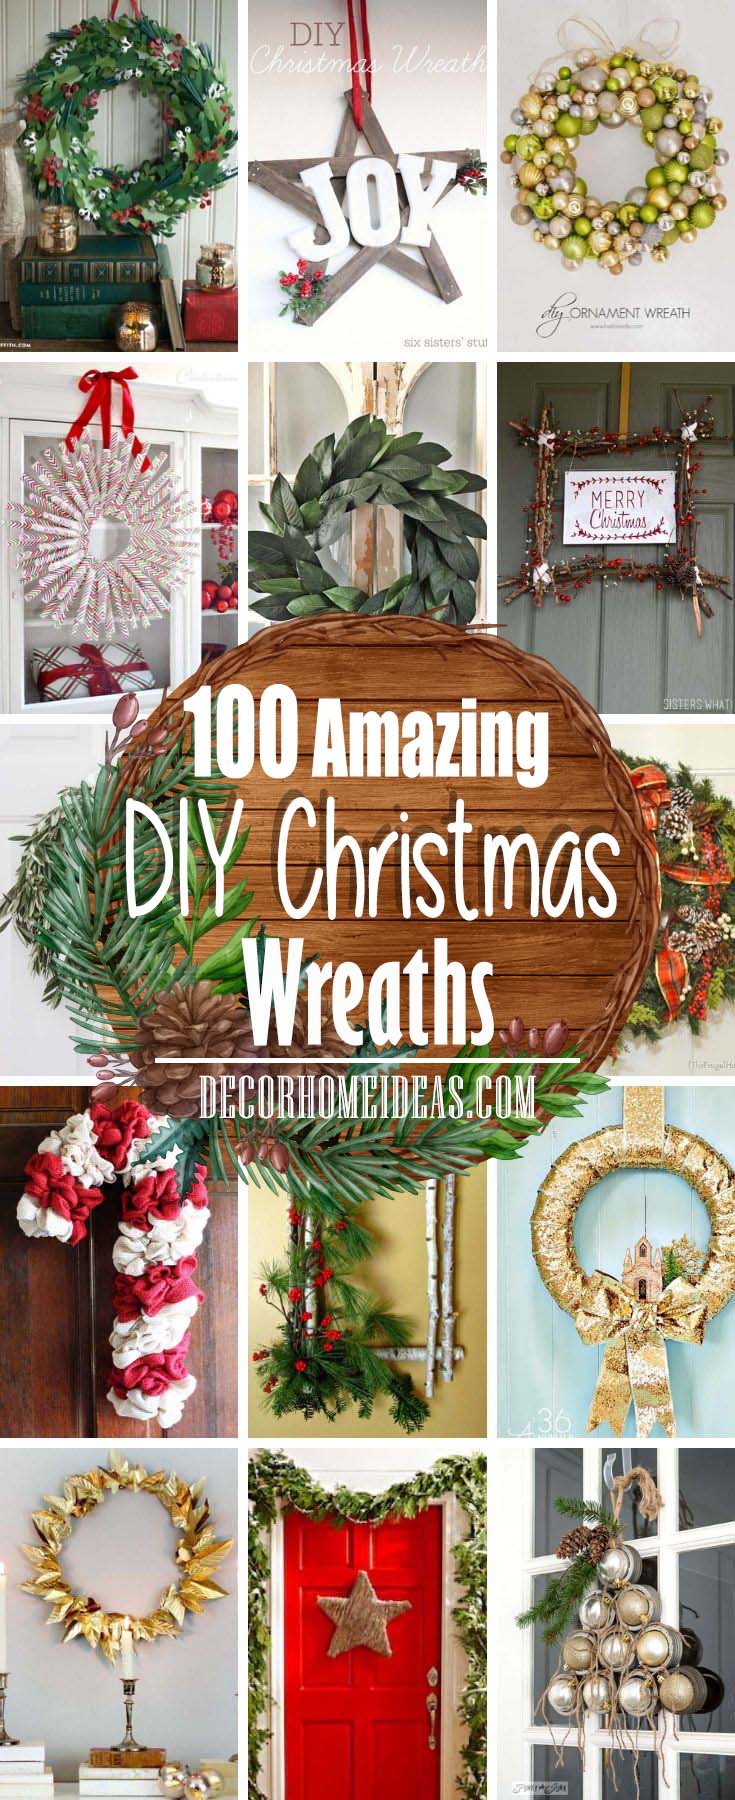 Best DIY Christmas Wreaths #Christmas #diy #wreath #decorhomeideas